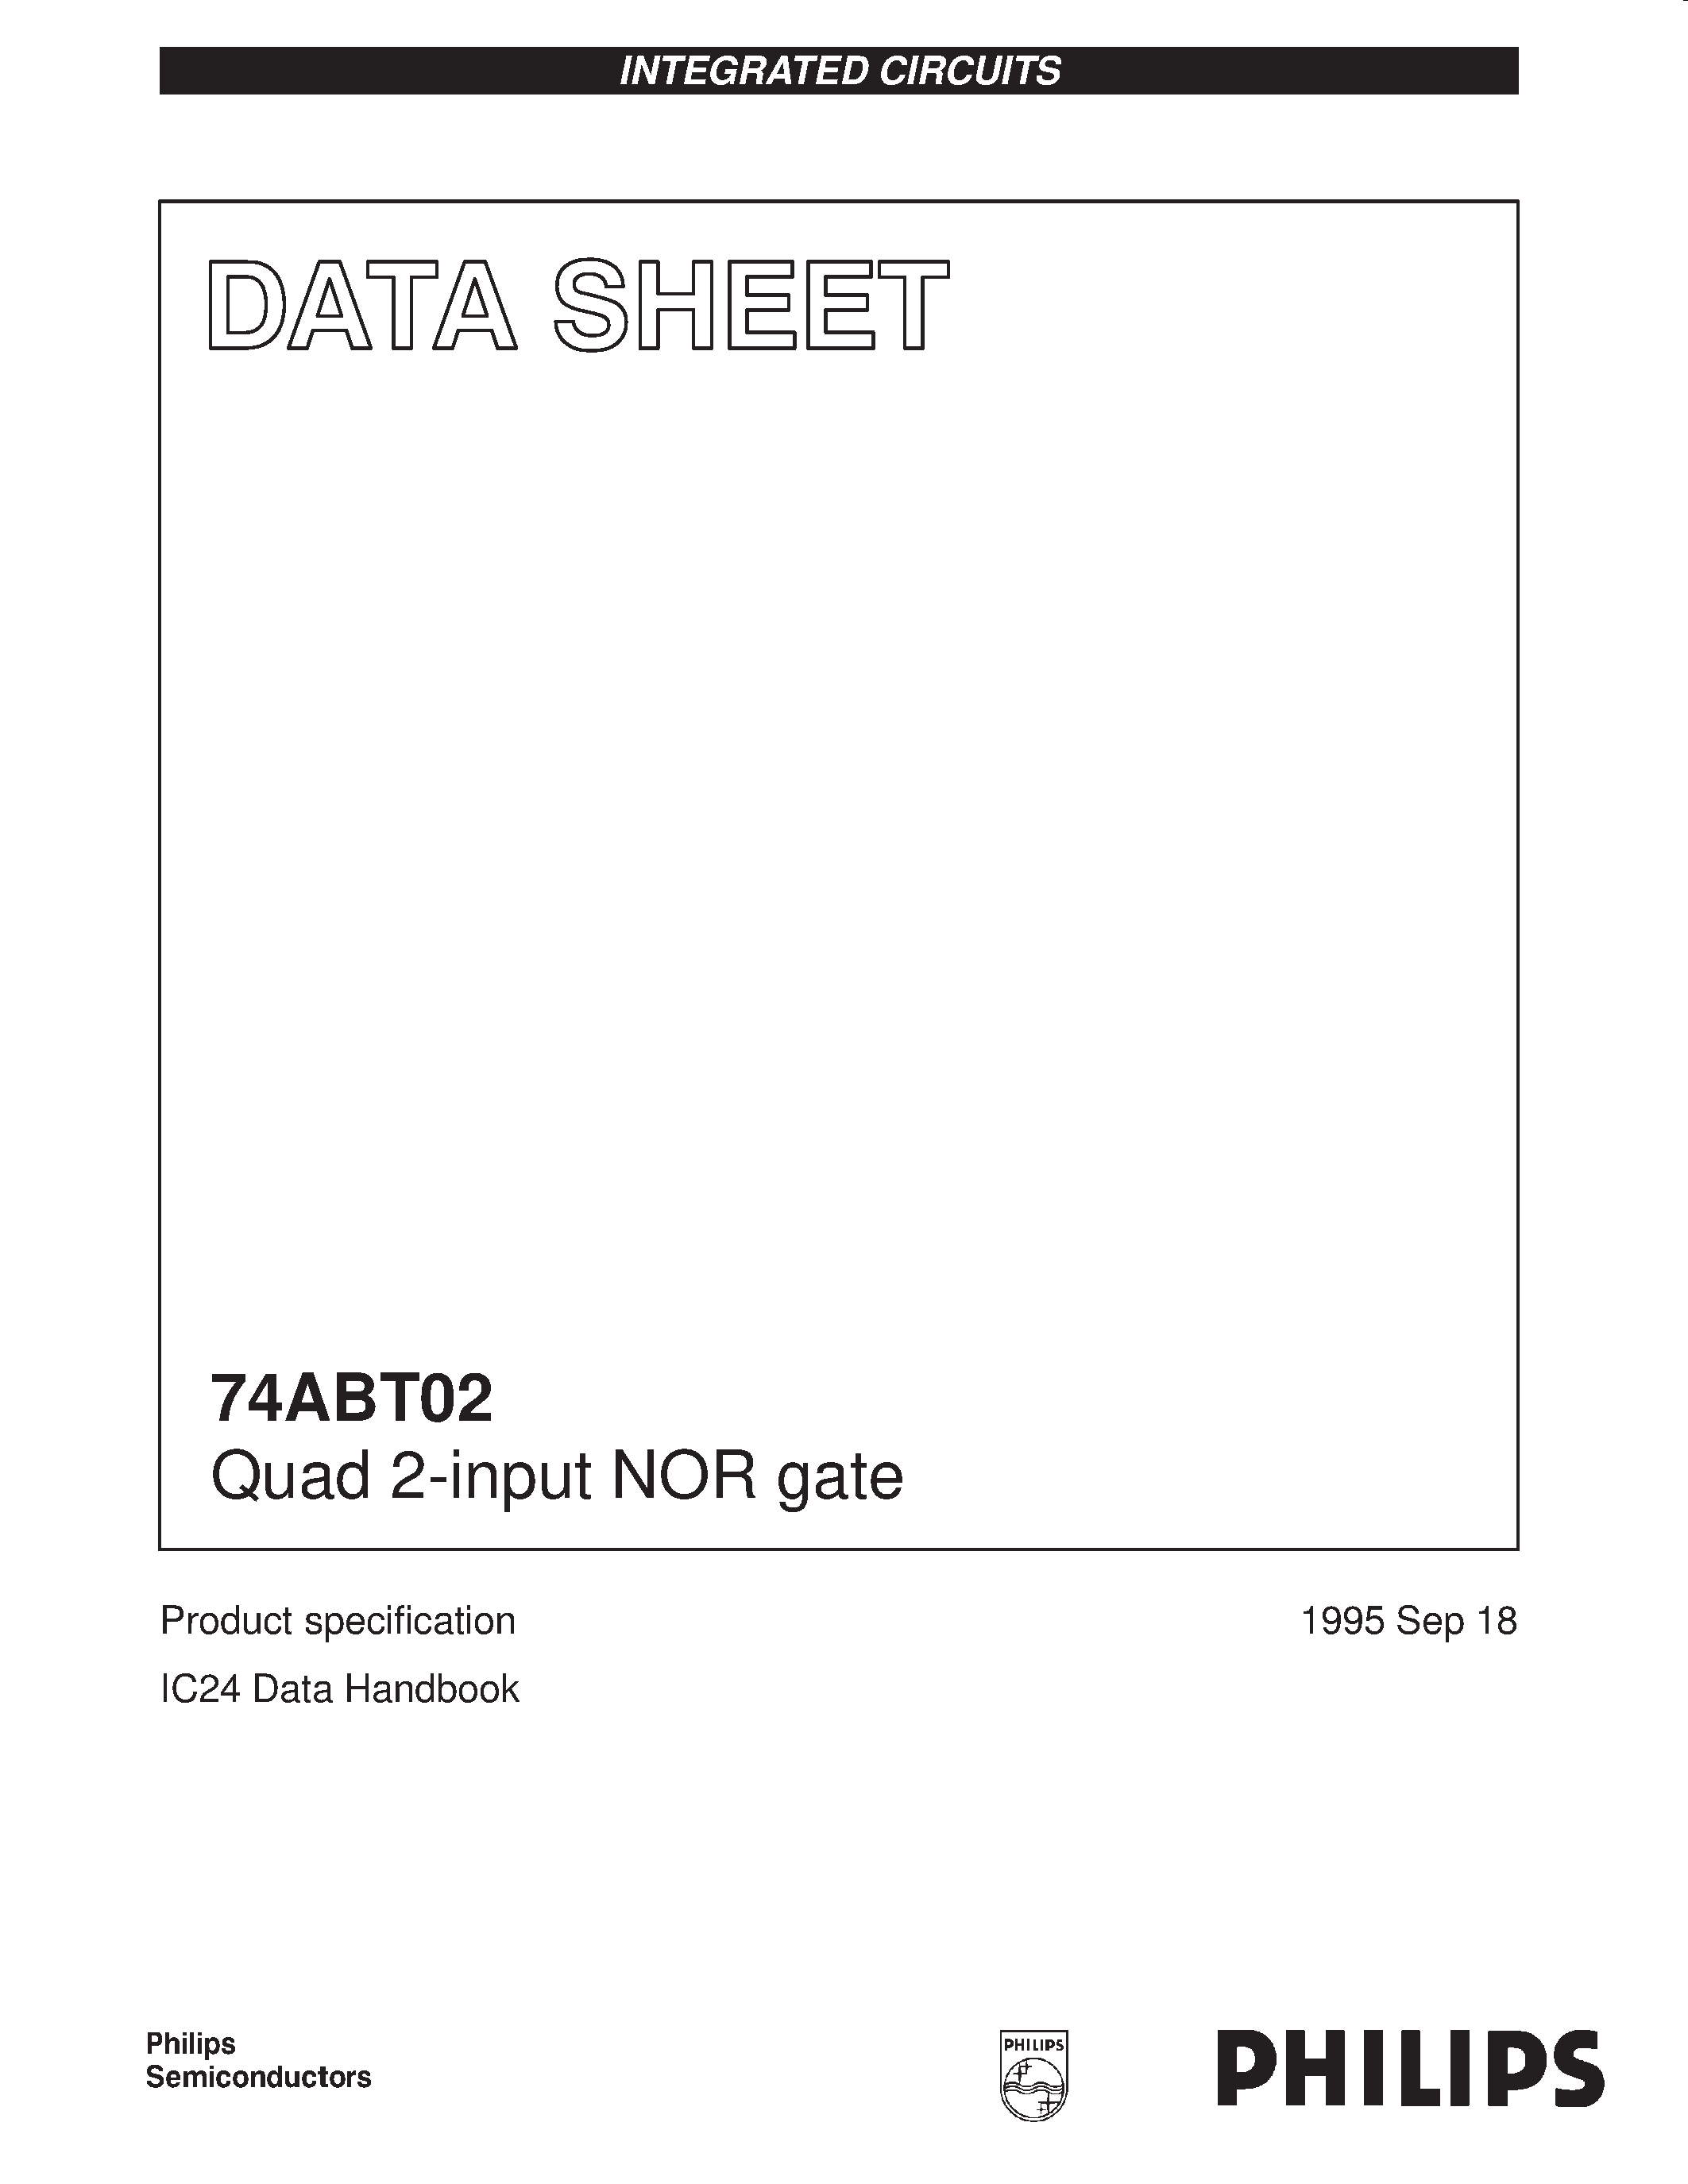 Даташит 74ABT02PW - Quad 2-input NOR gate страница 1